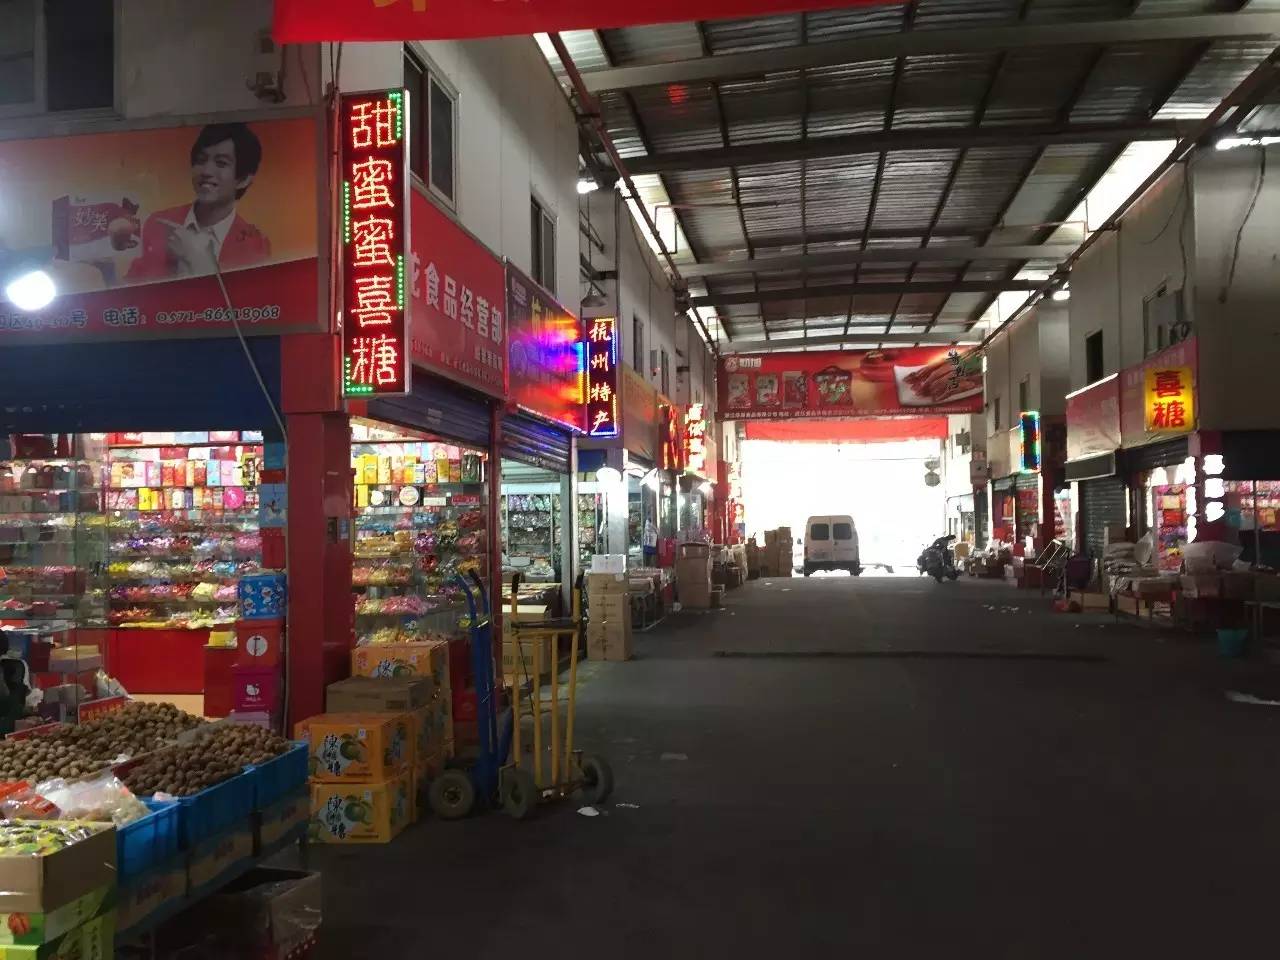 近江市场在钱江小商品市场和杭州近江食品市场去转了一圈,几十家喜糖